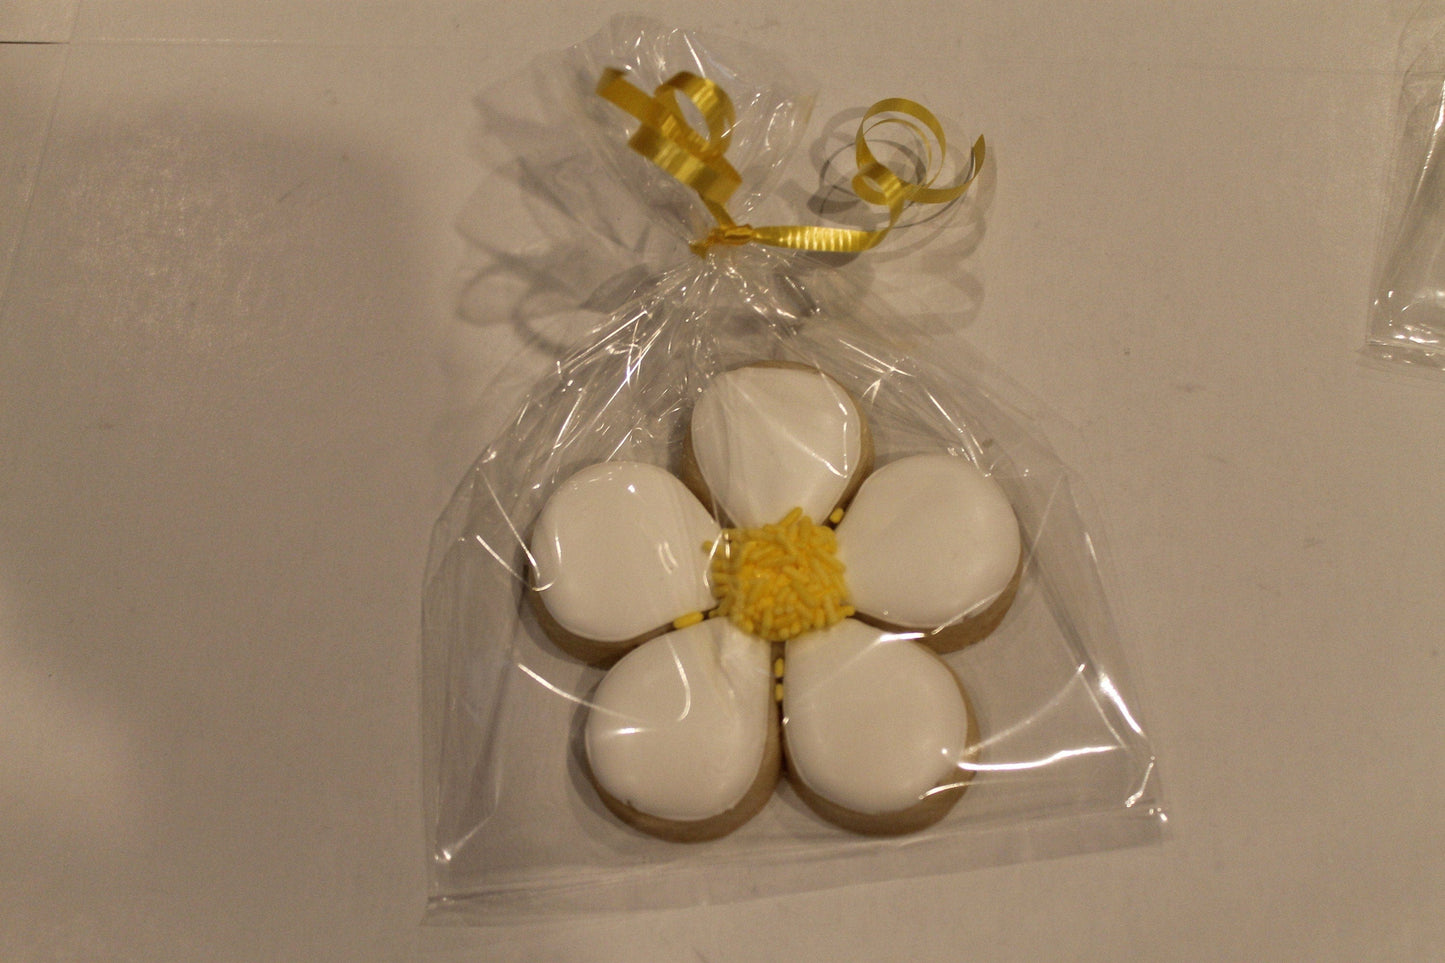 lemon cookies One Dozen (12) - Ladybug bake shop